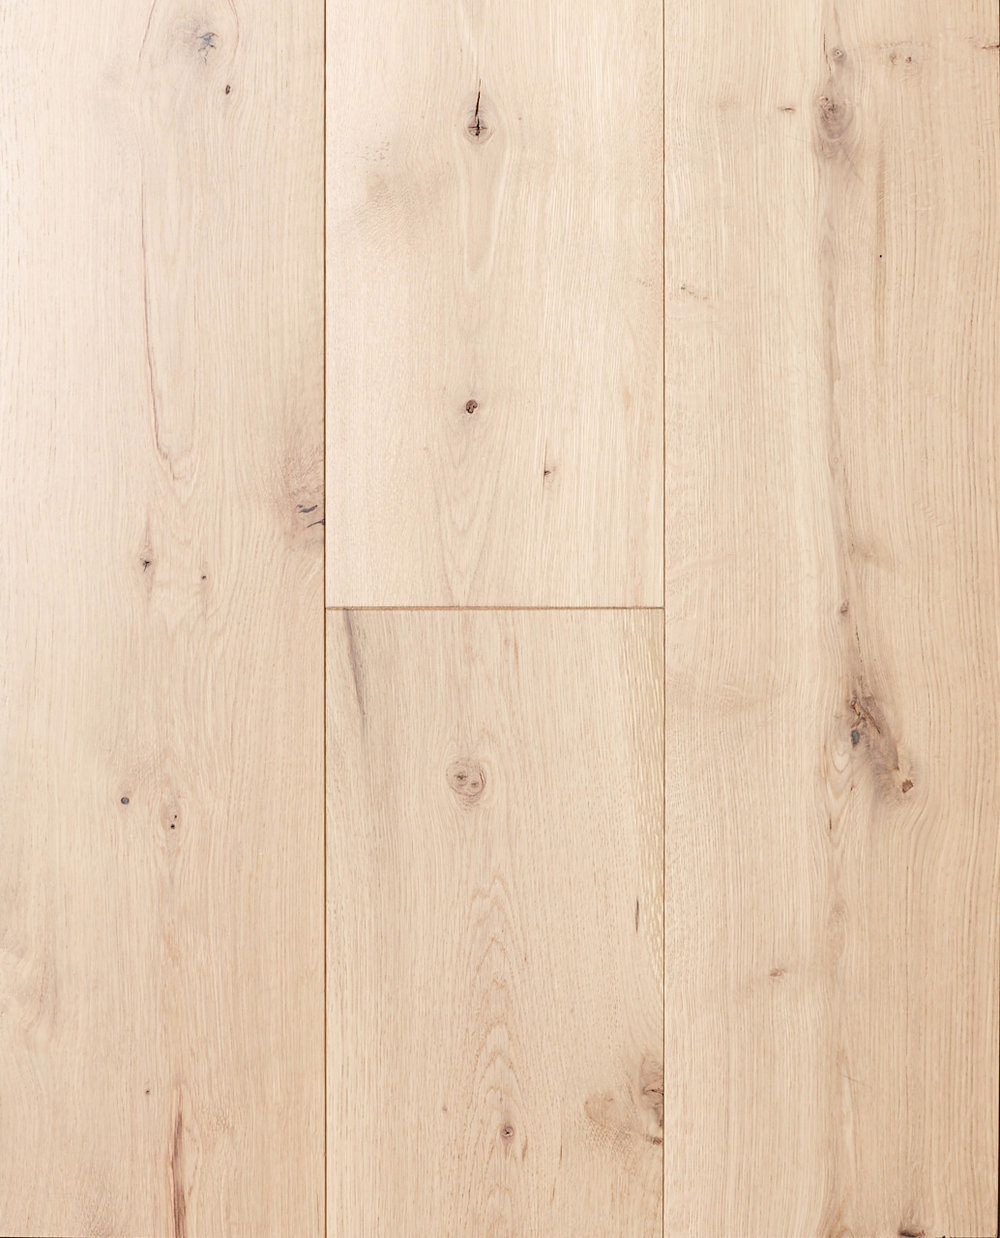 How to refinish maple floor?